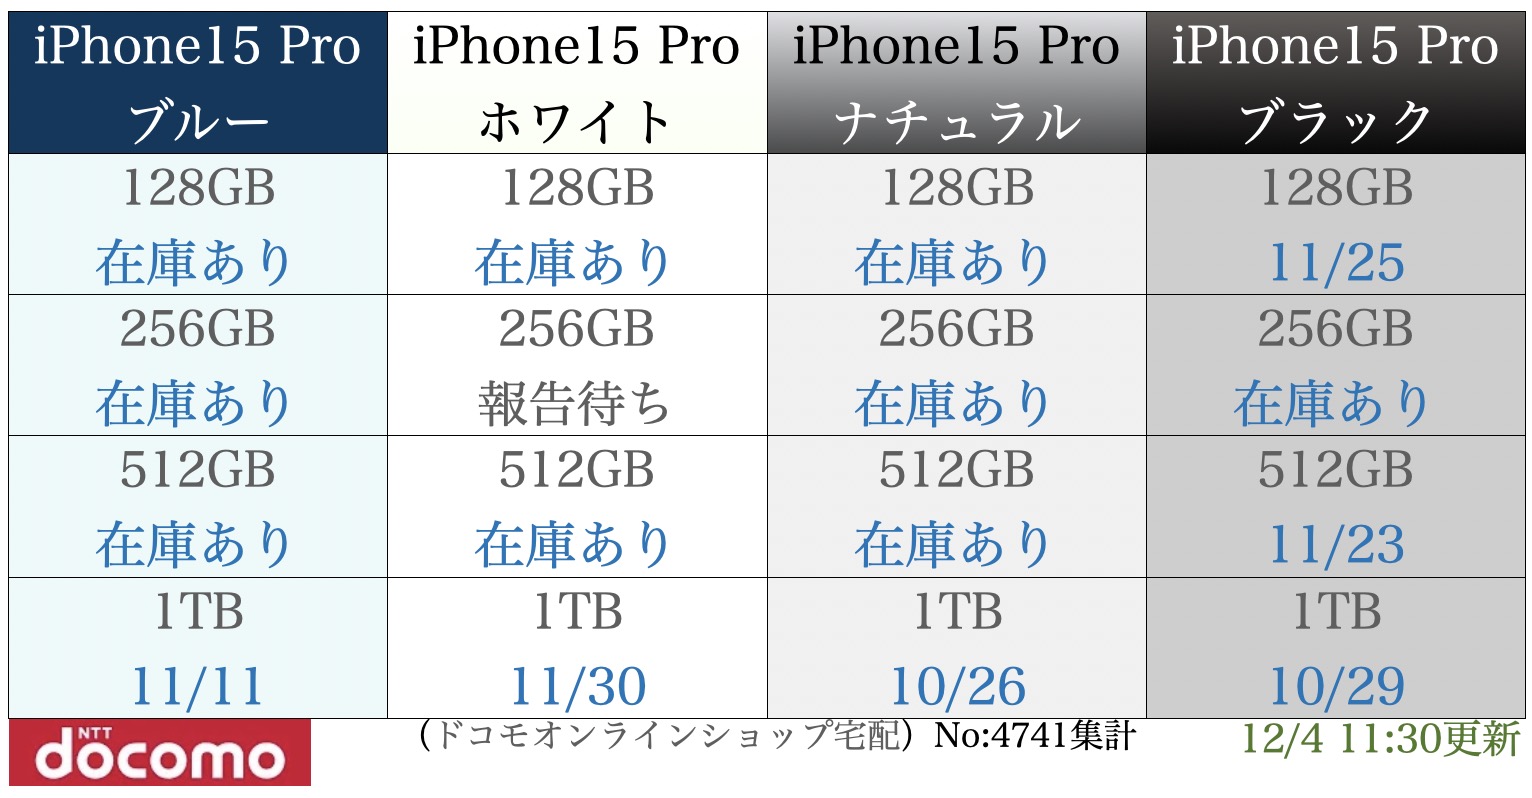 ドコモ iPhone 15 Pro】予約入荷在庫状況 報告所 - 予約ゲットコム